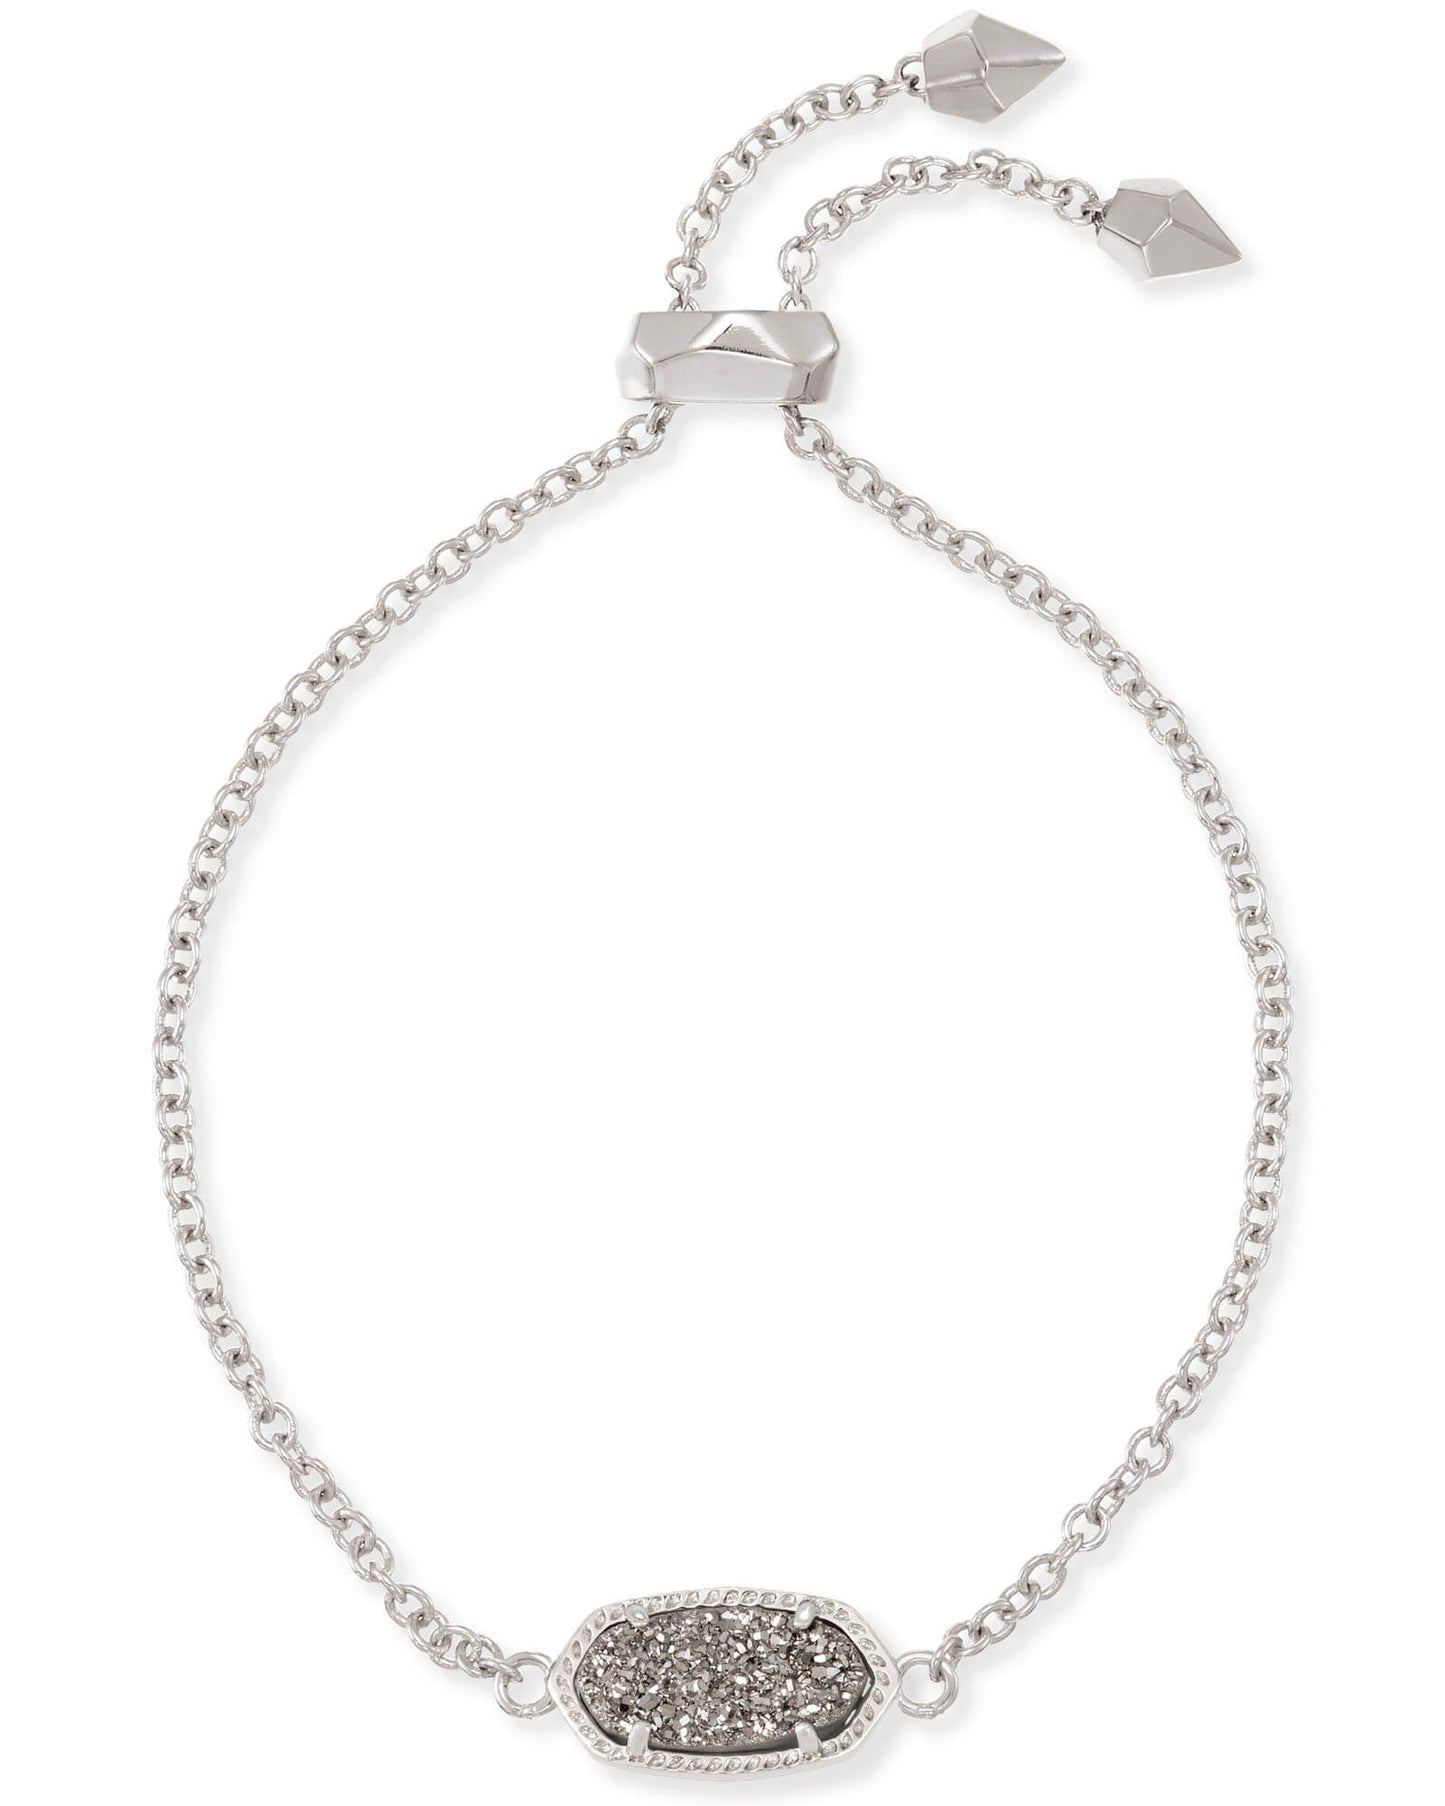 Ott Adjustable Chain Bracelet in Silver